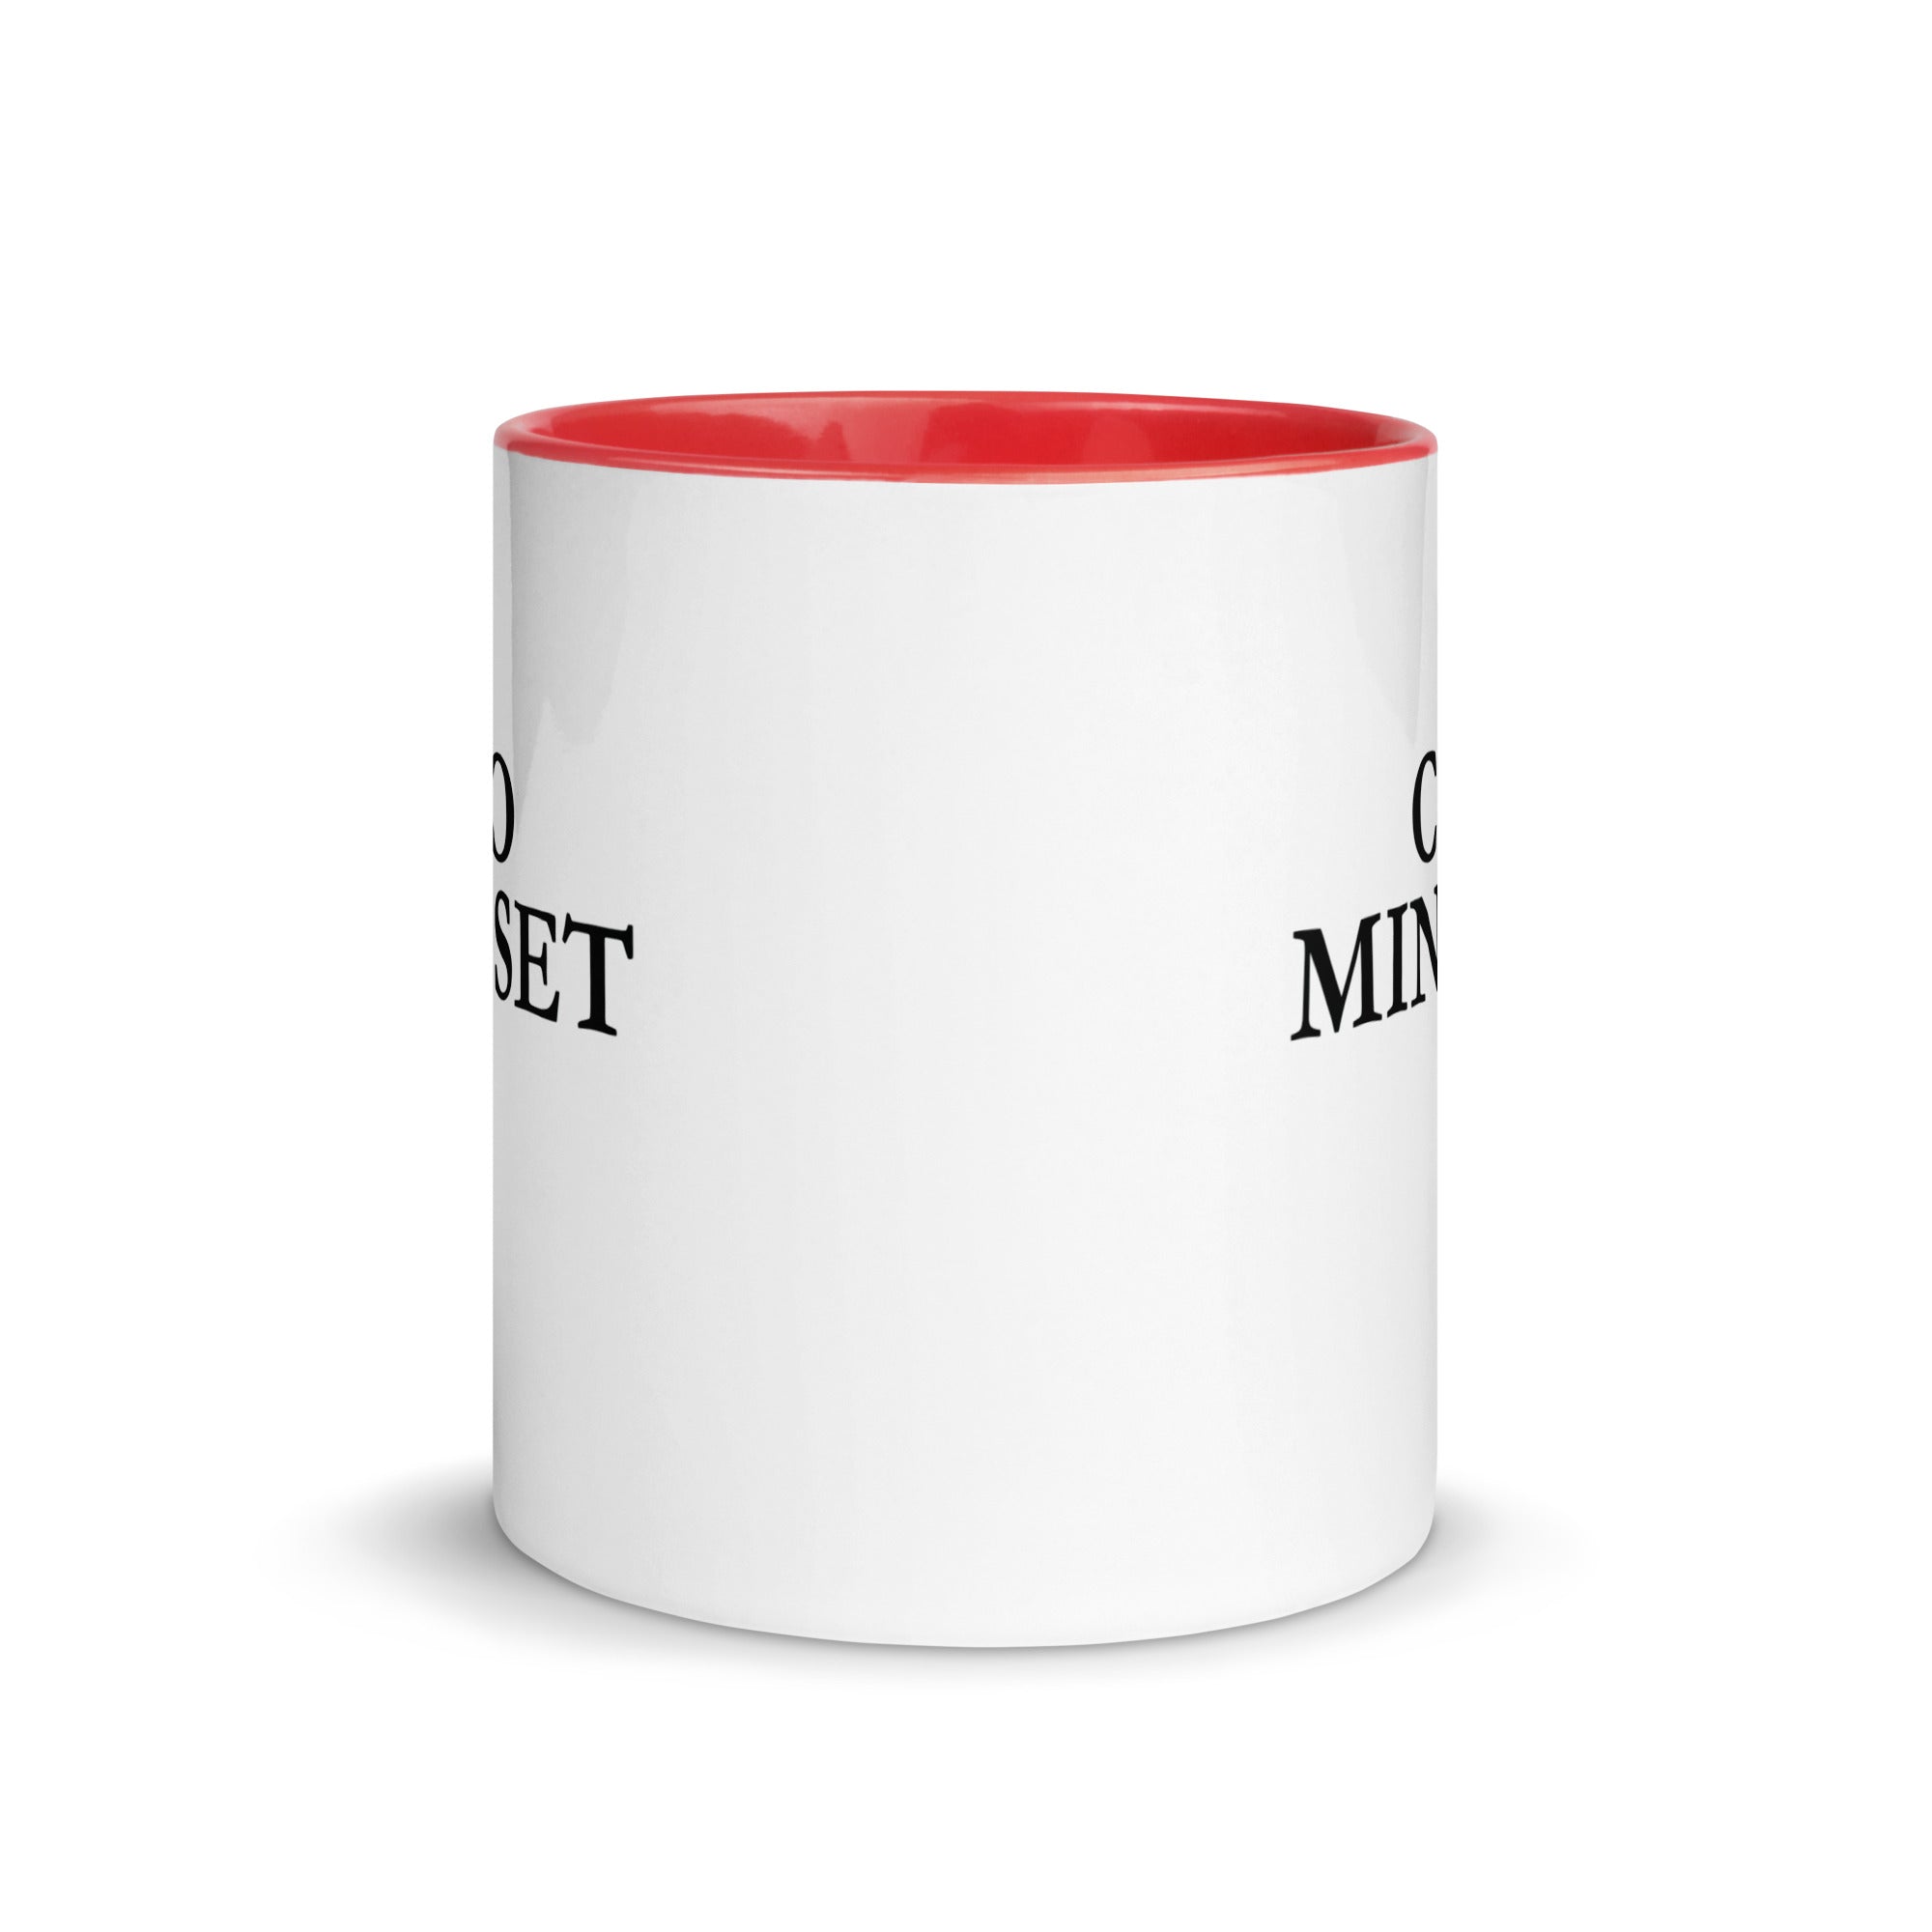 Mug with Color Inside | CEO Mindset